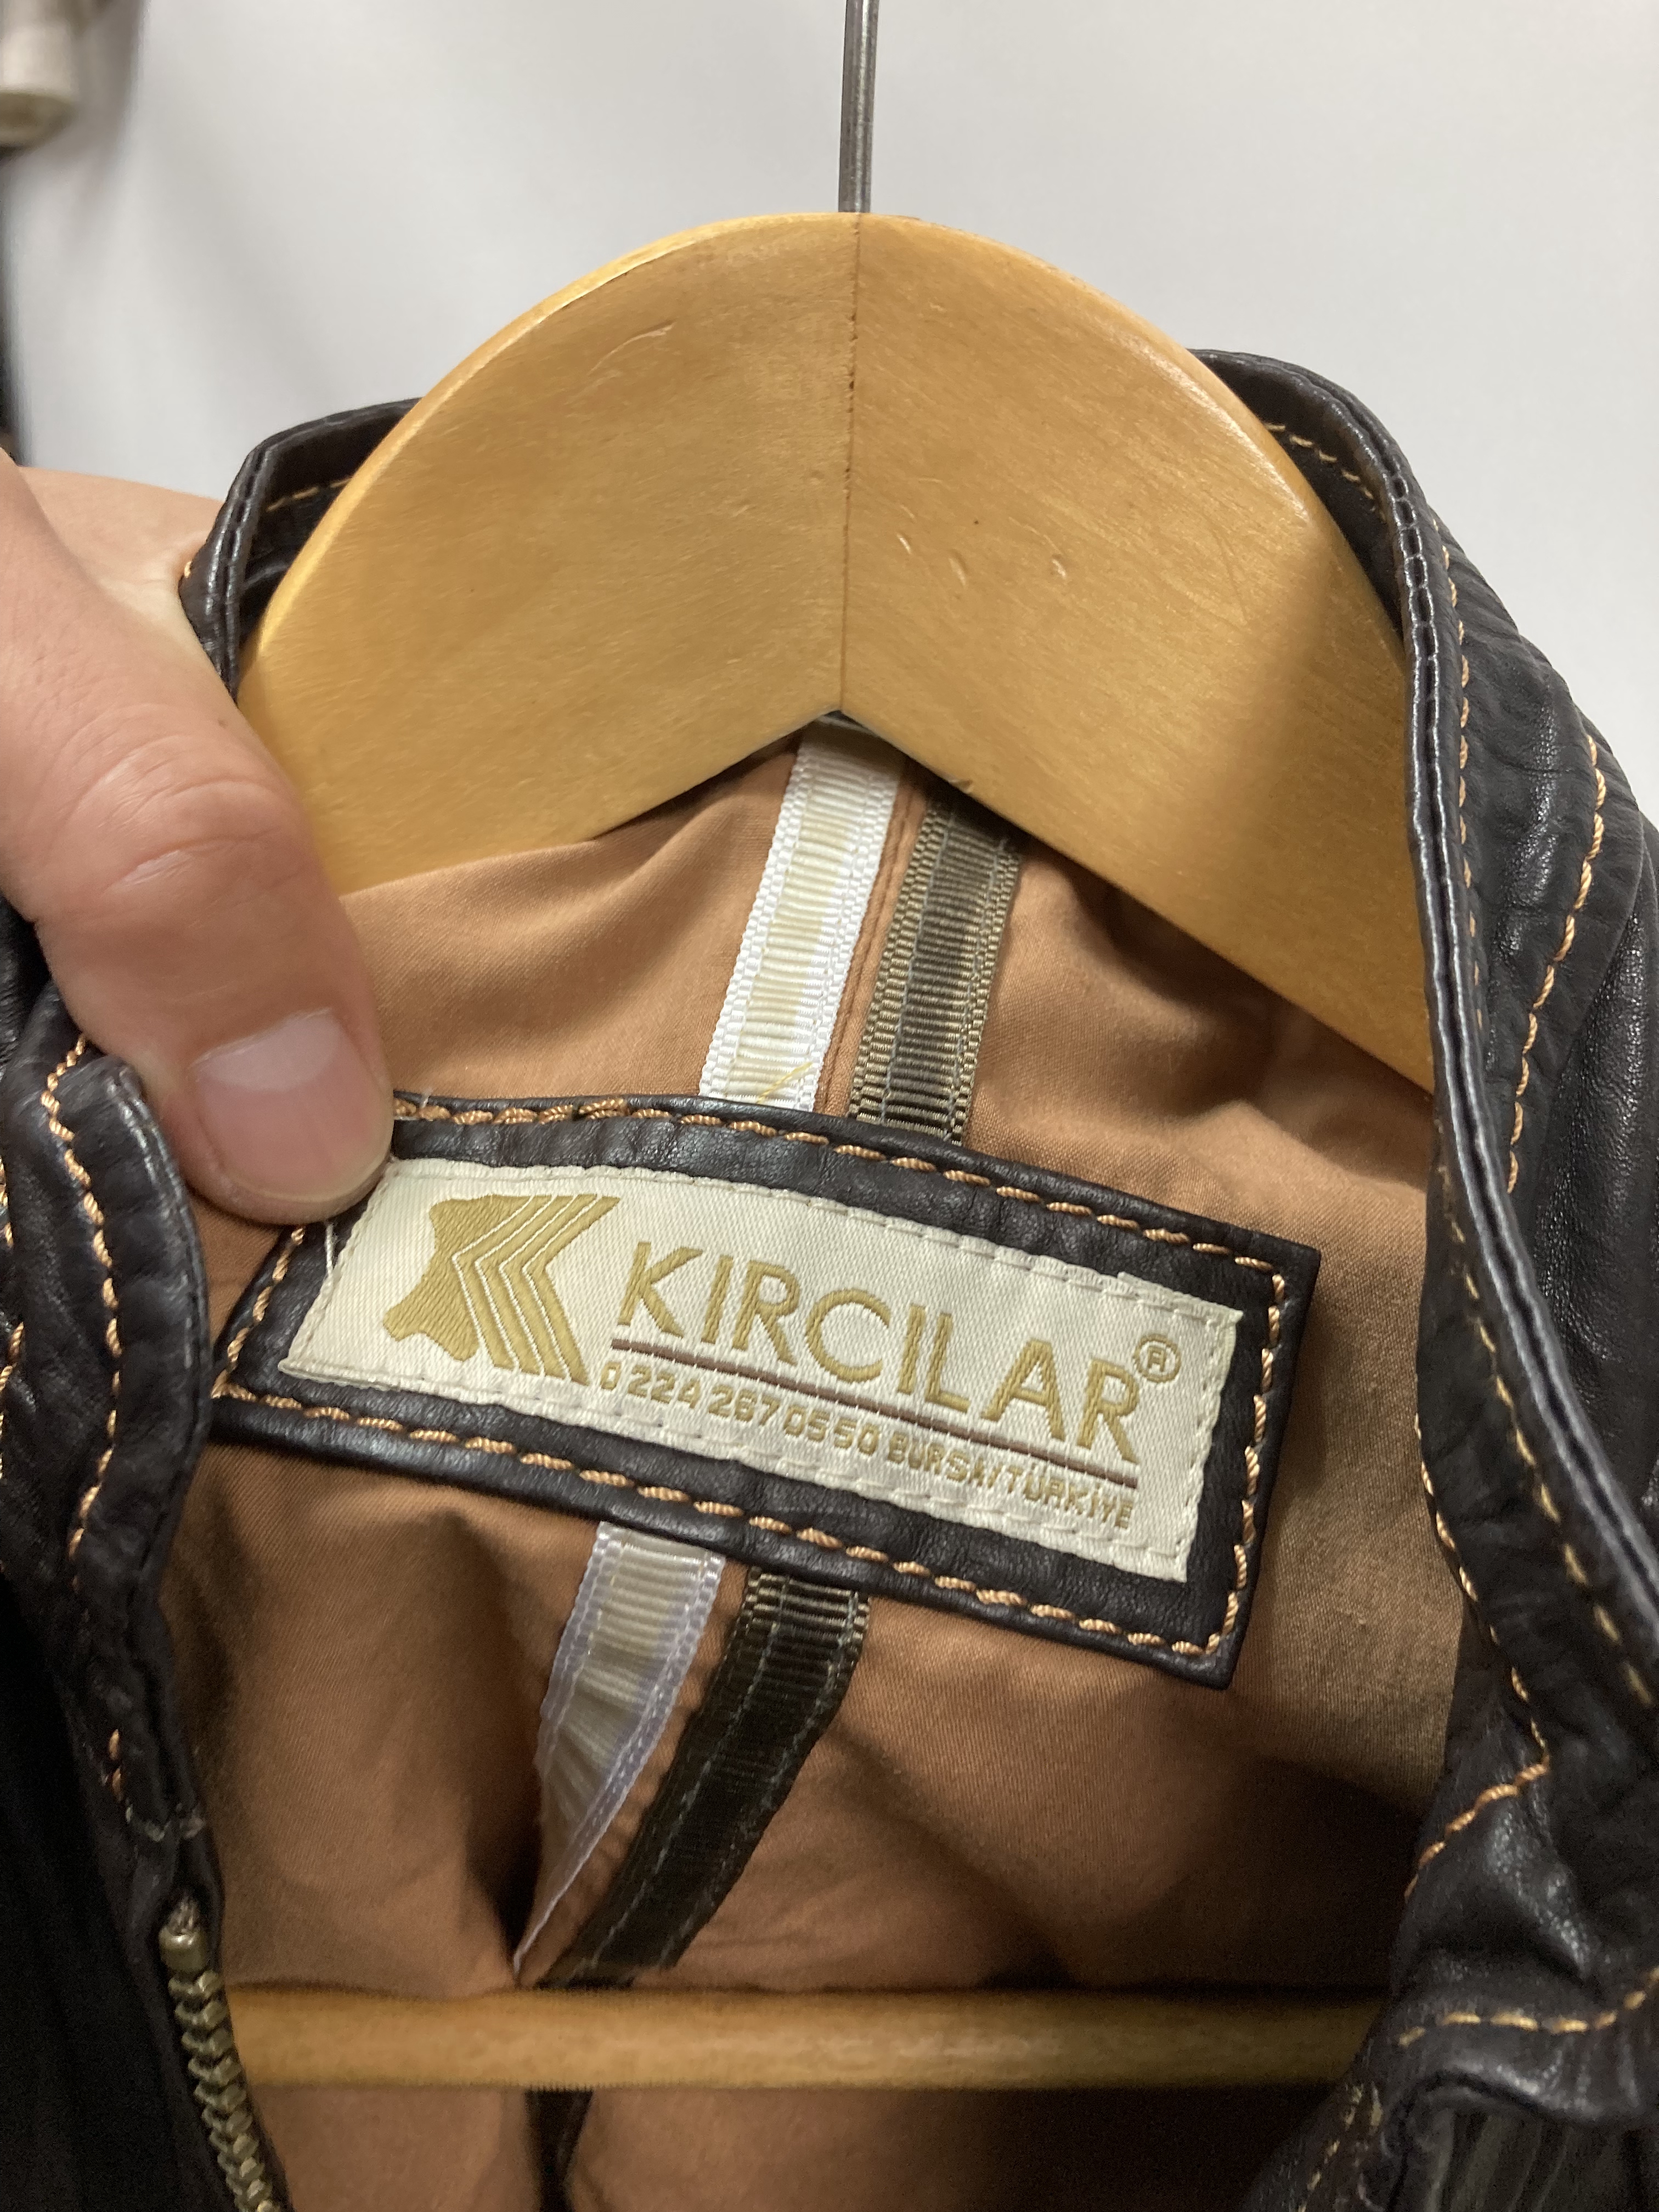 Kircilar ラムレザージャケット(婦人)XL